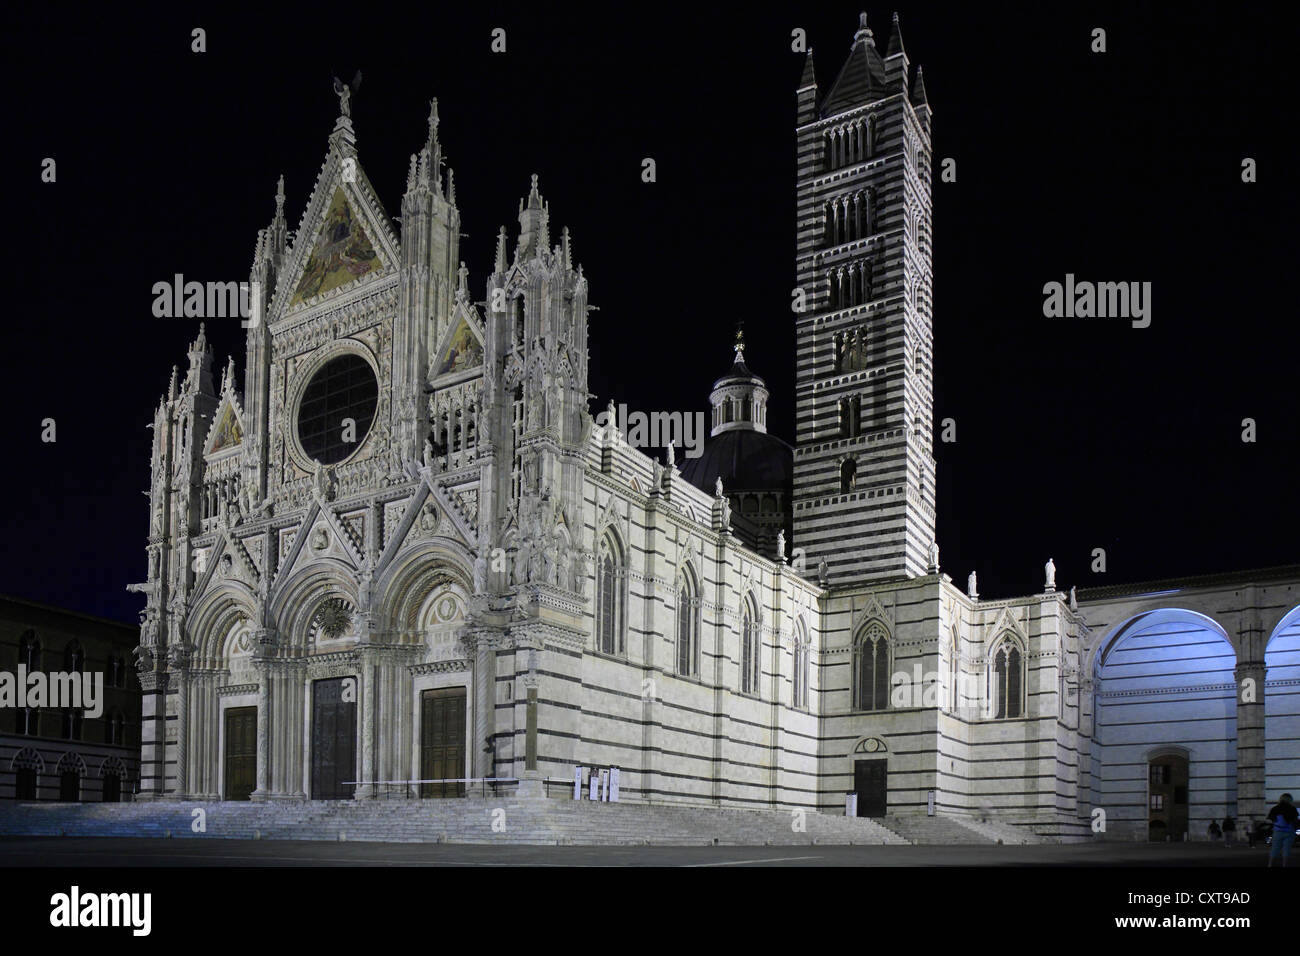 Dom von Siena, Kathedrale Santa Maria Assunta bei Nacht, Siena, Toskana, Italien, Europa Stockfoto